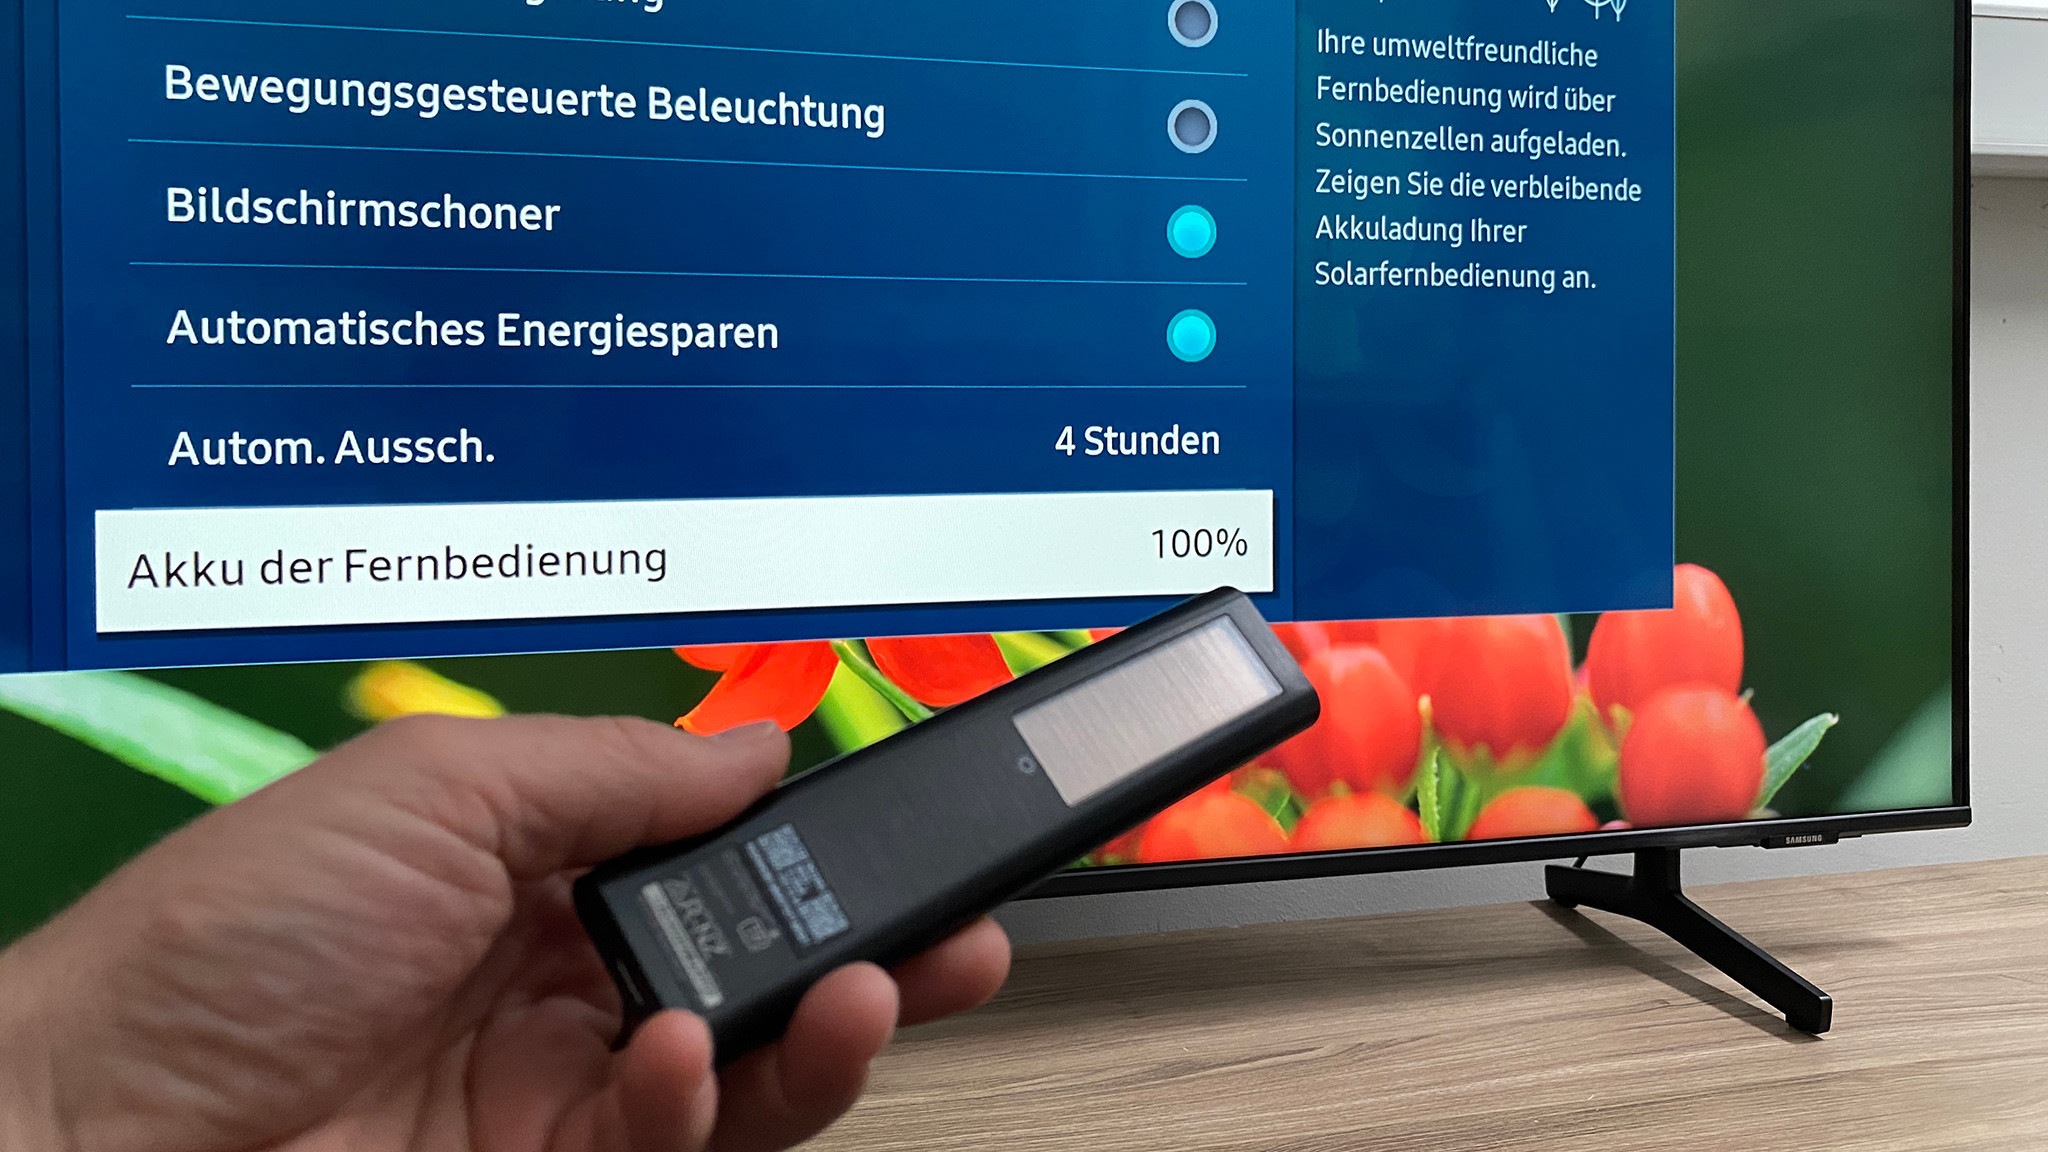 Samsung Test: kaum Geld BU8079 Fernseher Mehr BILD geht COMPUTER im - fürs